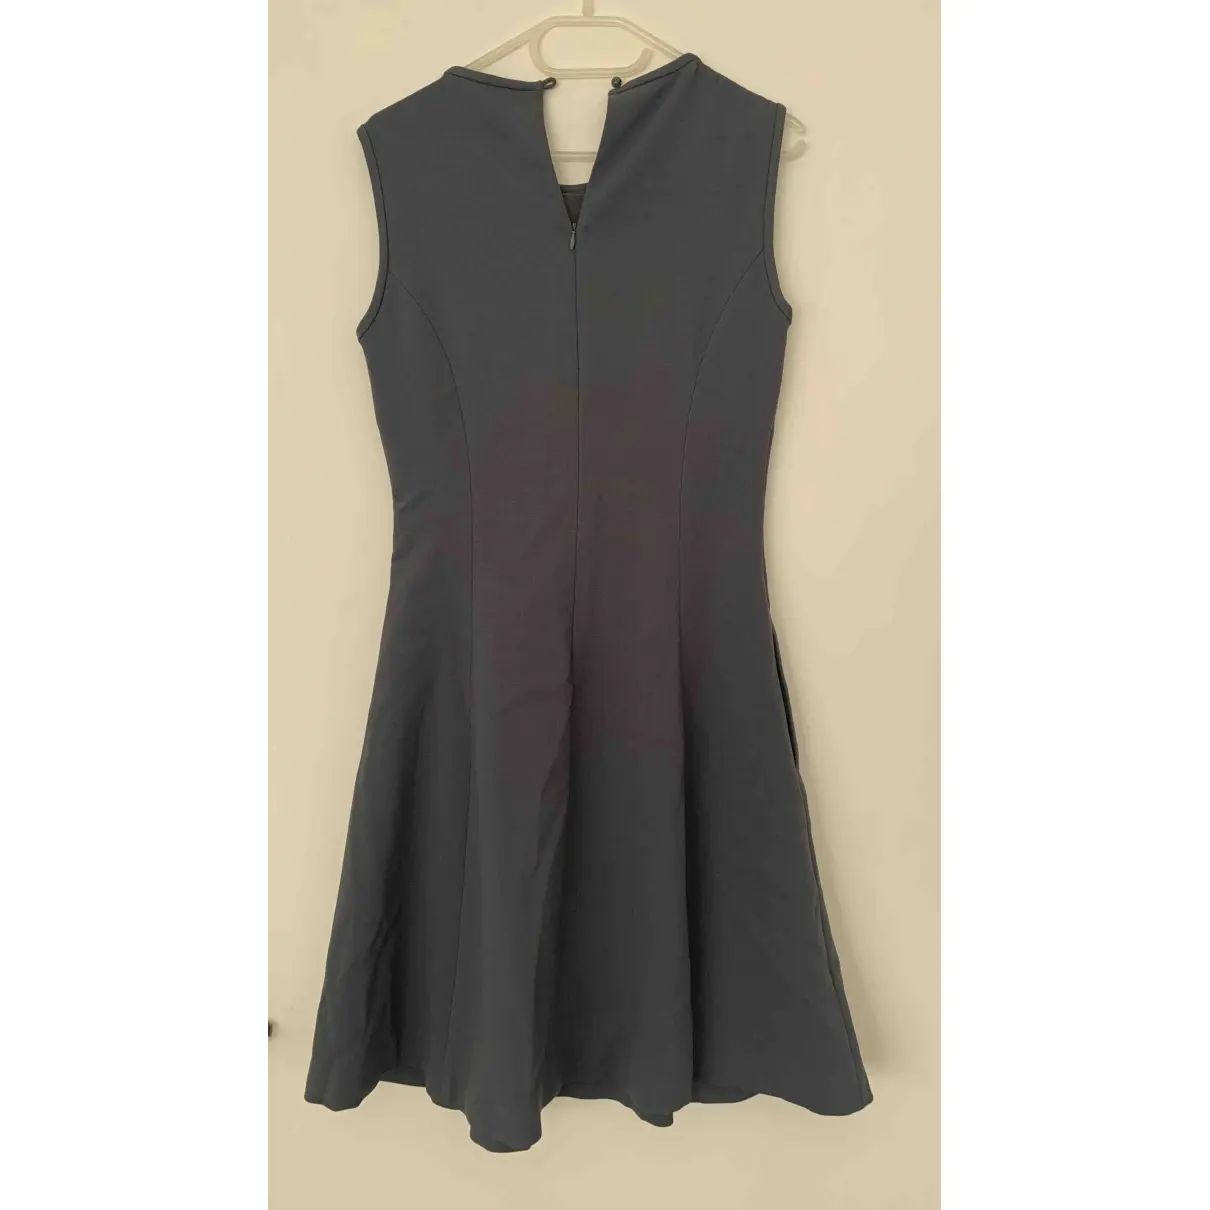 Buy Kate Spade Dress online